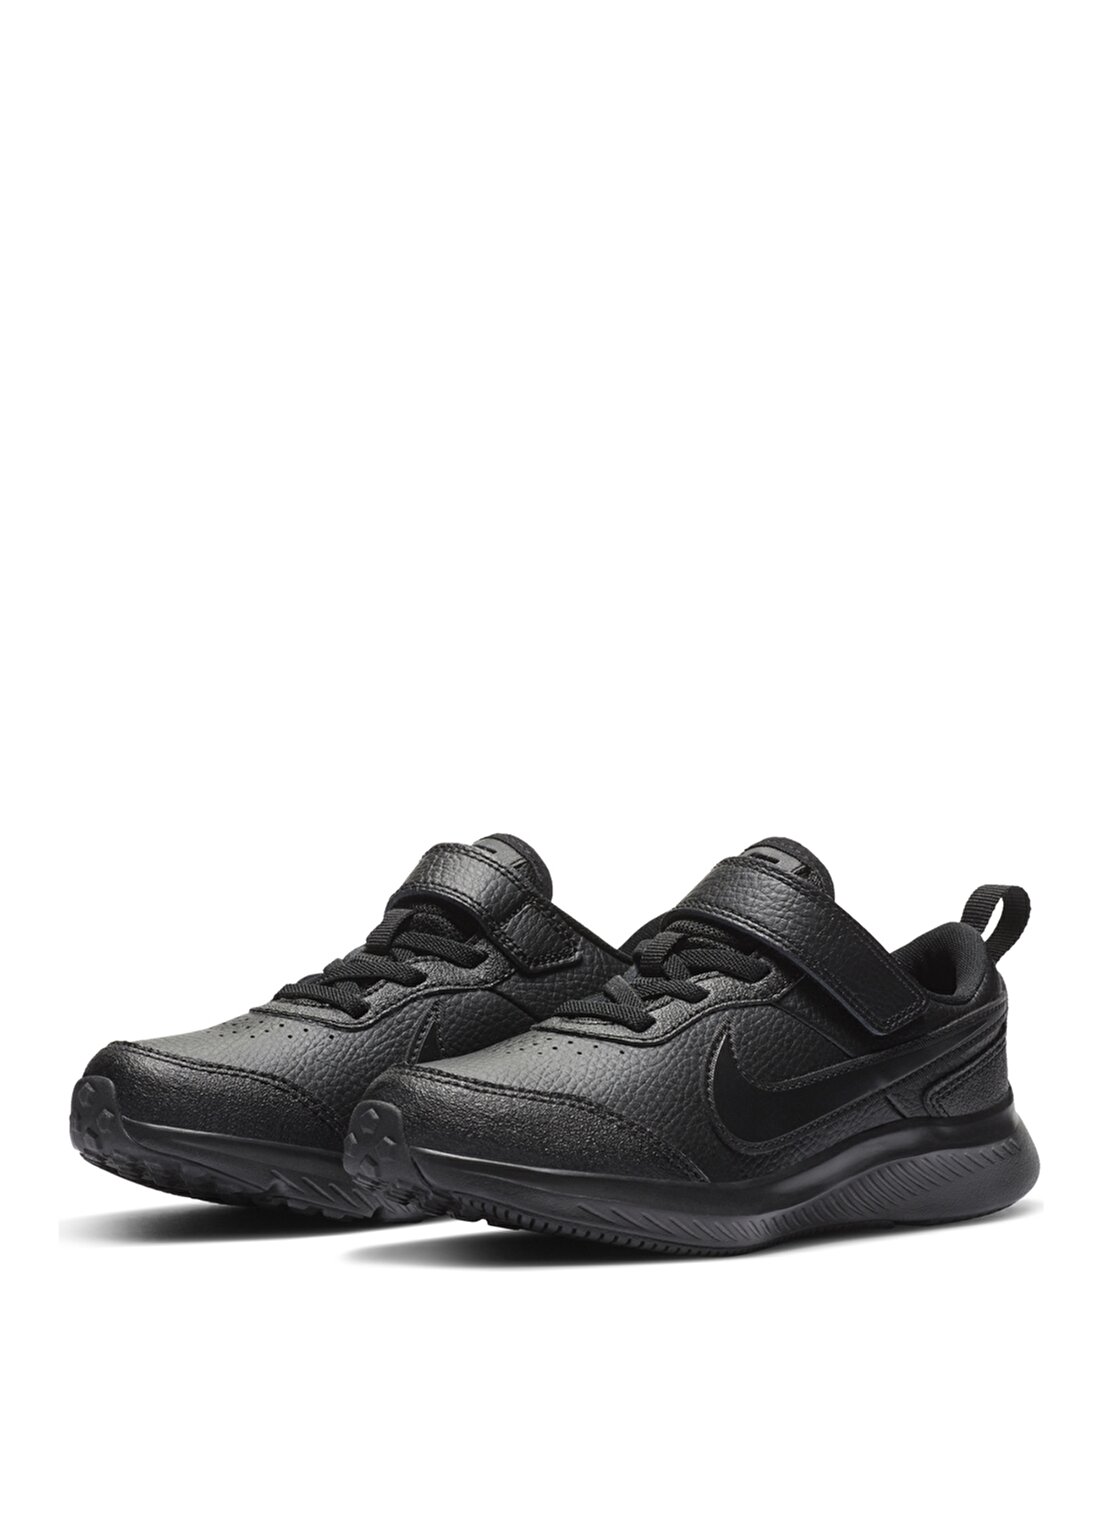 Nike CN9393-001 Varsıty Leather (Psv) Siyah Unisex Çocuk Yürüyüş Ayakkabısı